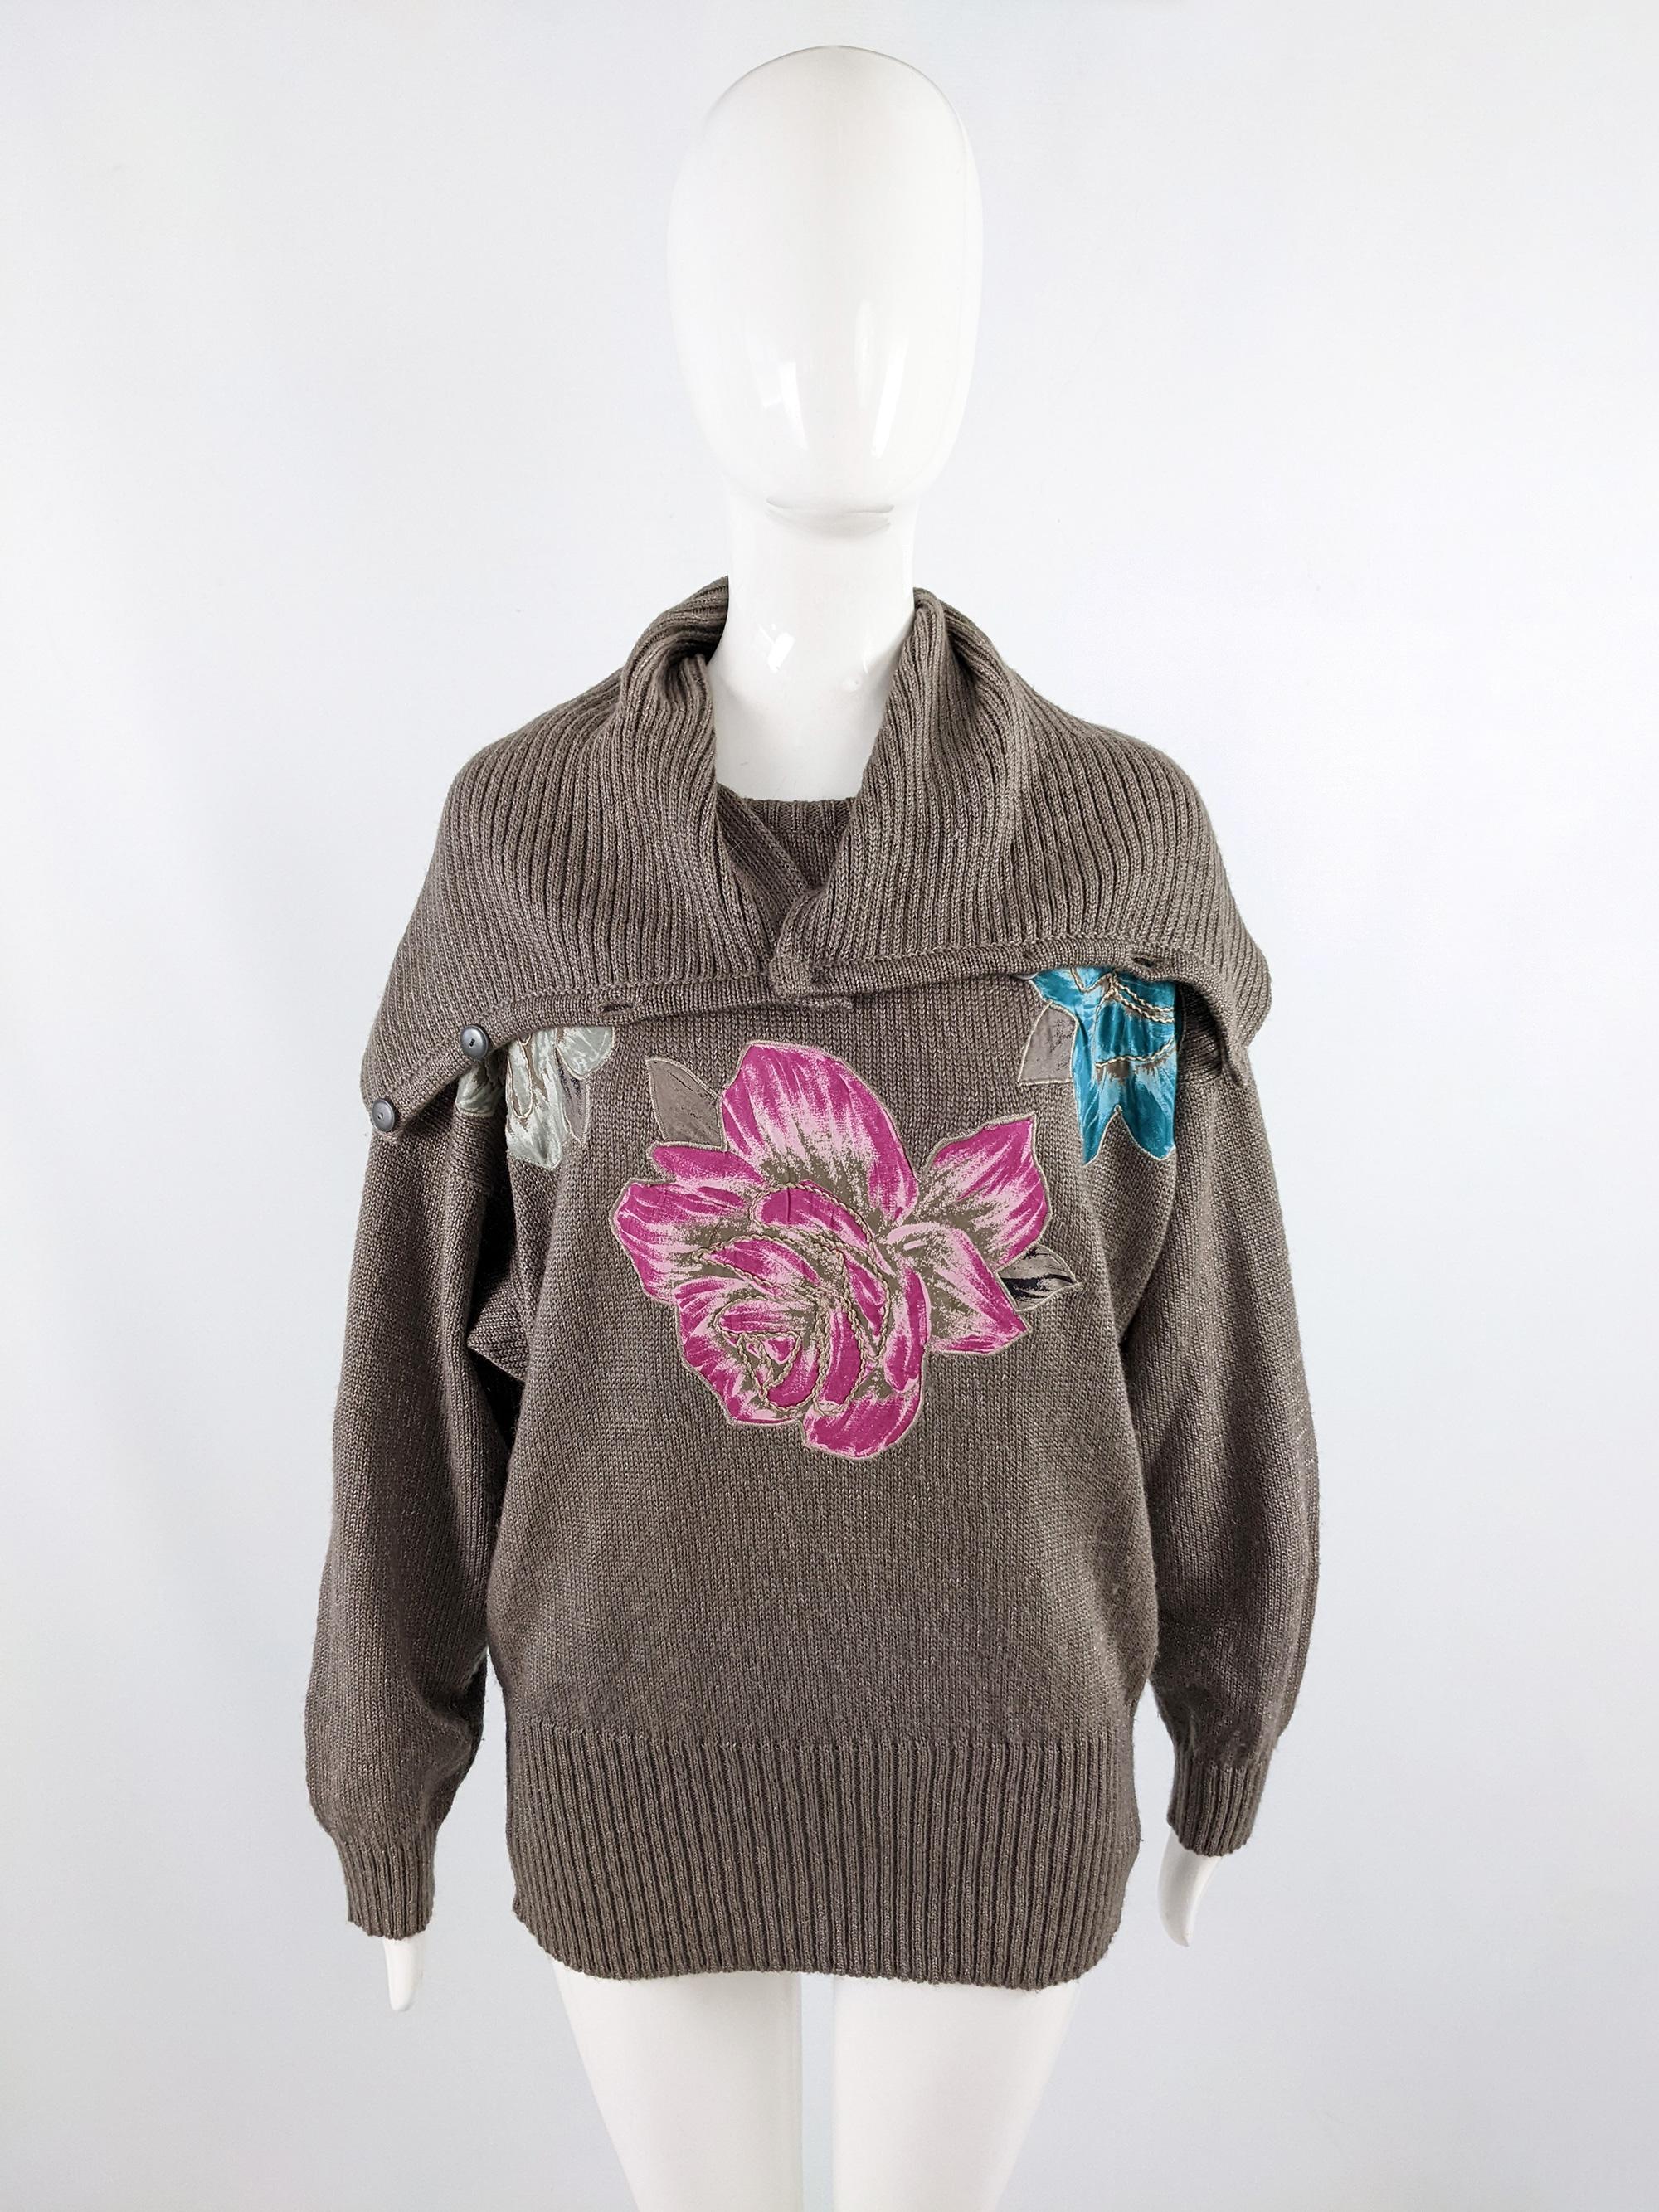 Vintage 80s Italian Knitwear Knit Oversized Roll Neck Jumper Sweater, 1980s For Sale 3